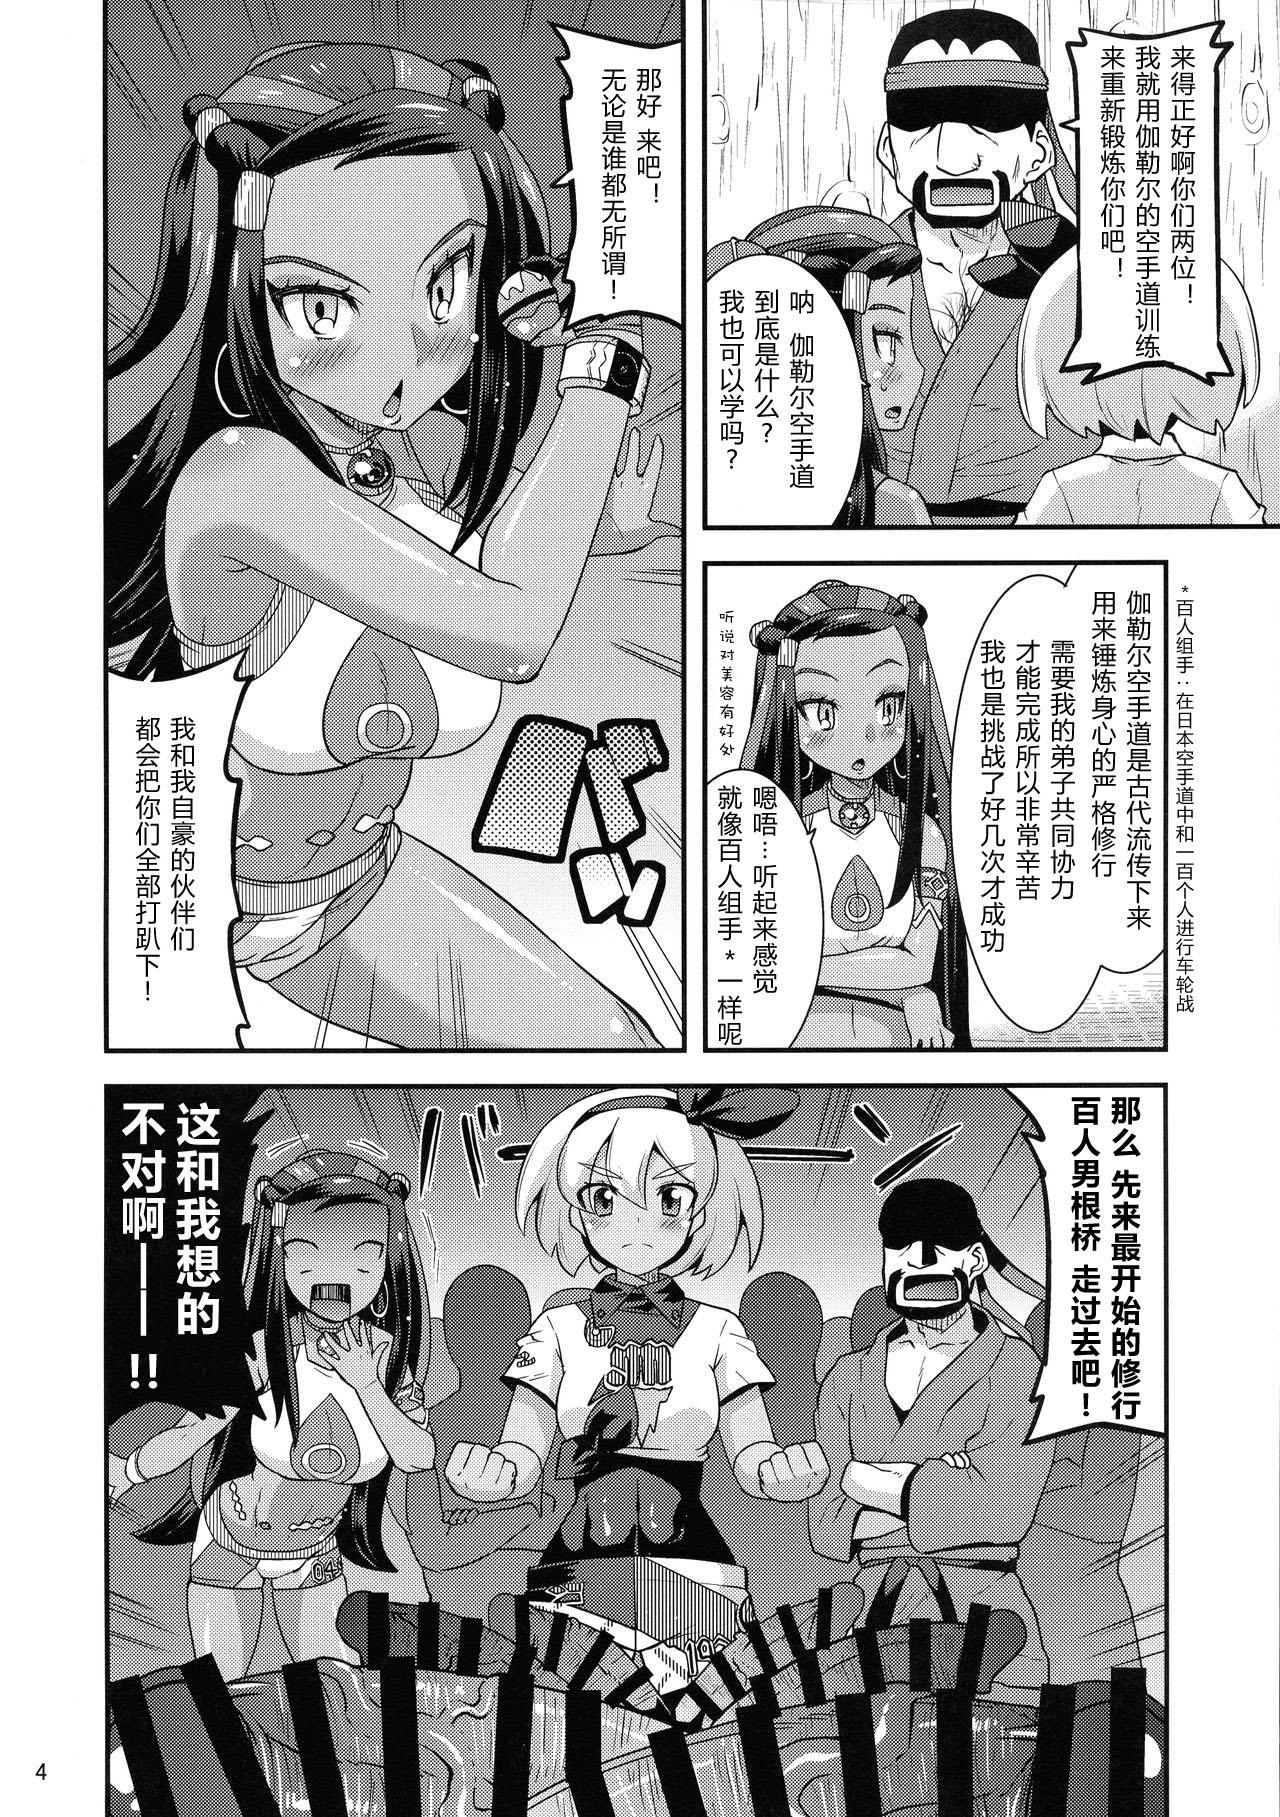 Infiel Galar no Okite - Pokemon Passion - Page 4